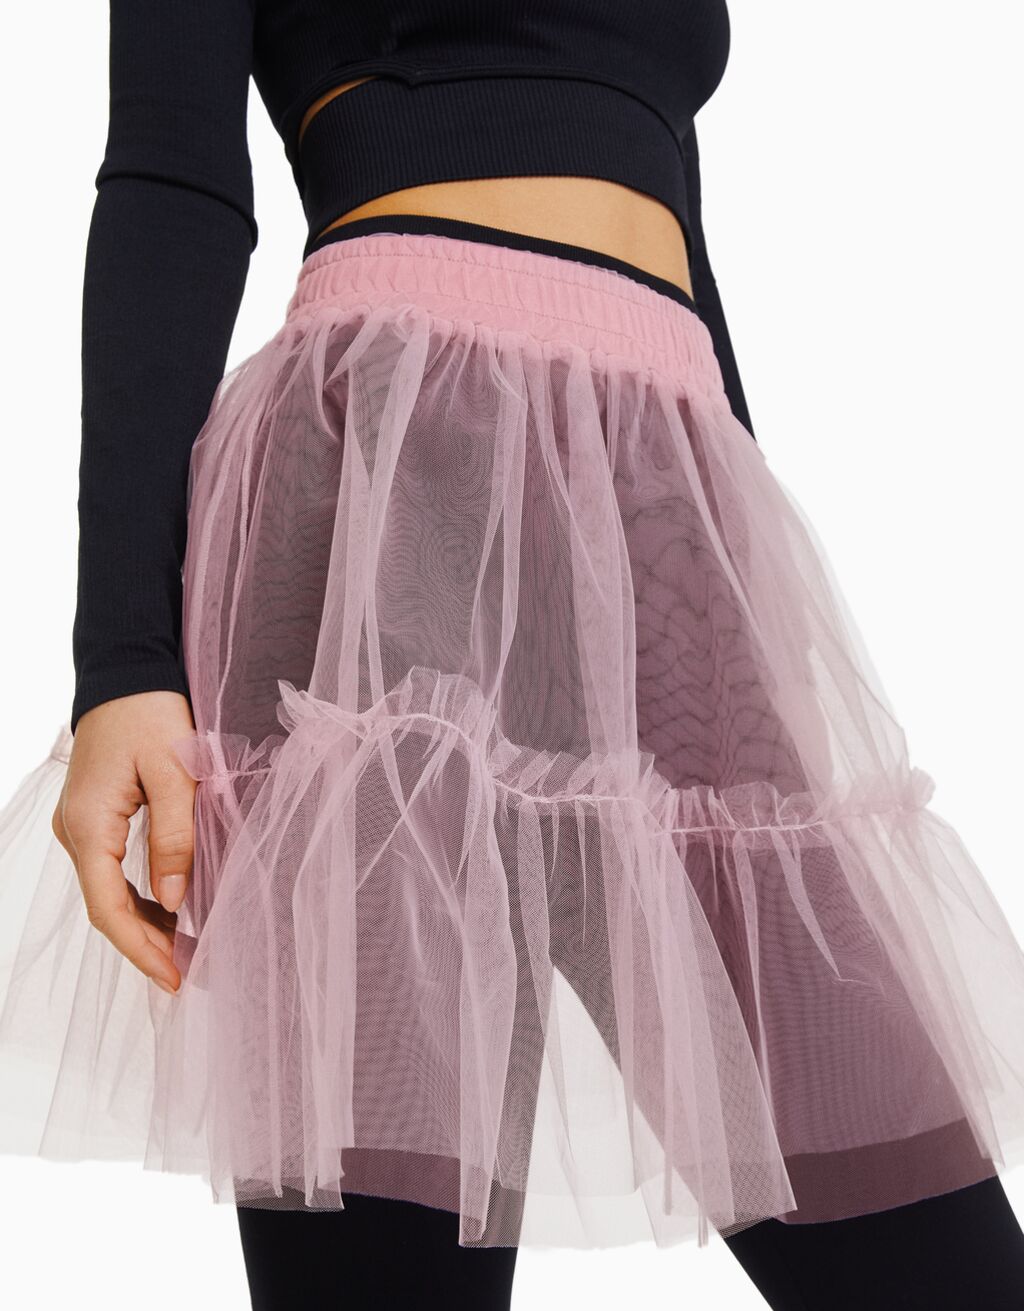 Ballerina Tulle Mini Skirt Woman Bershka 